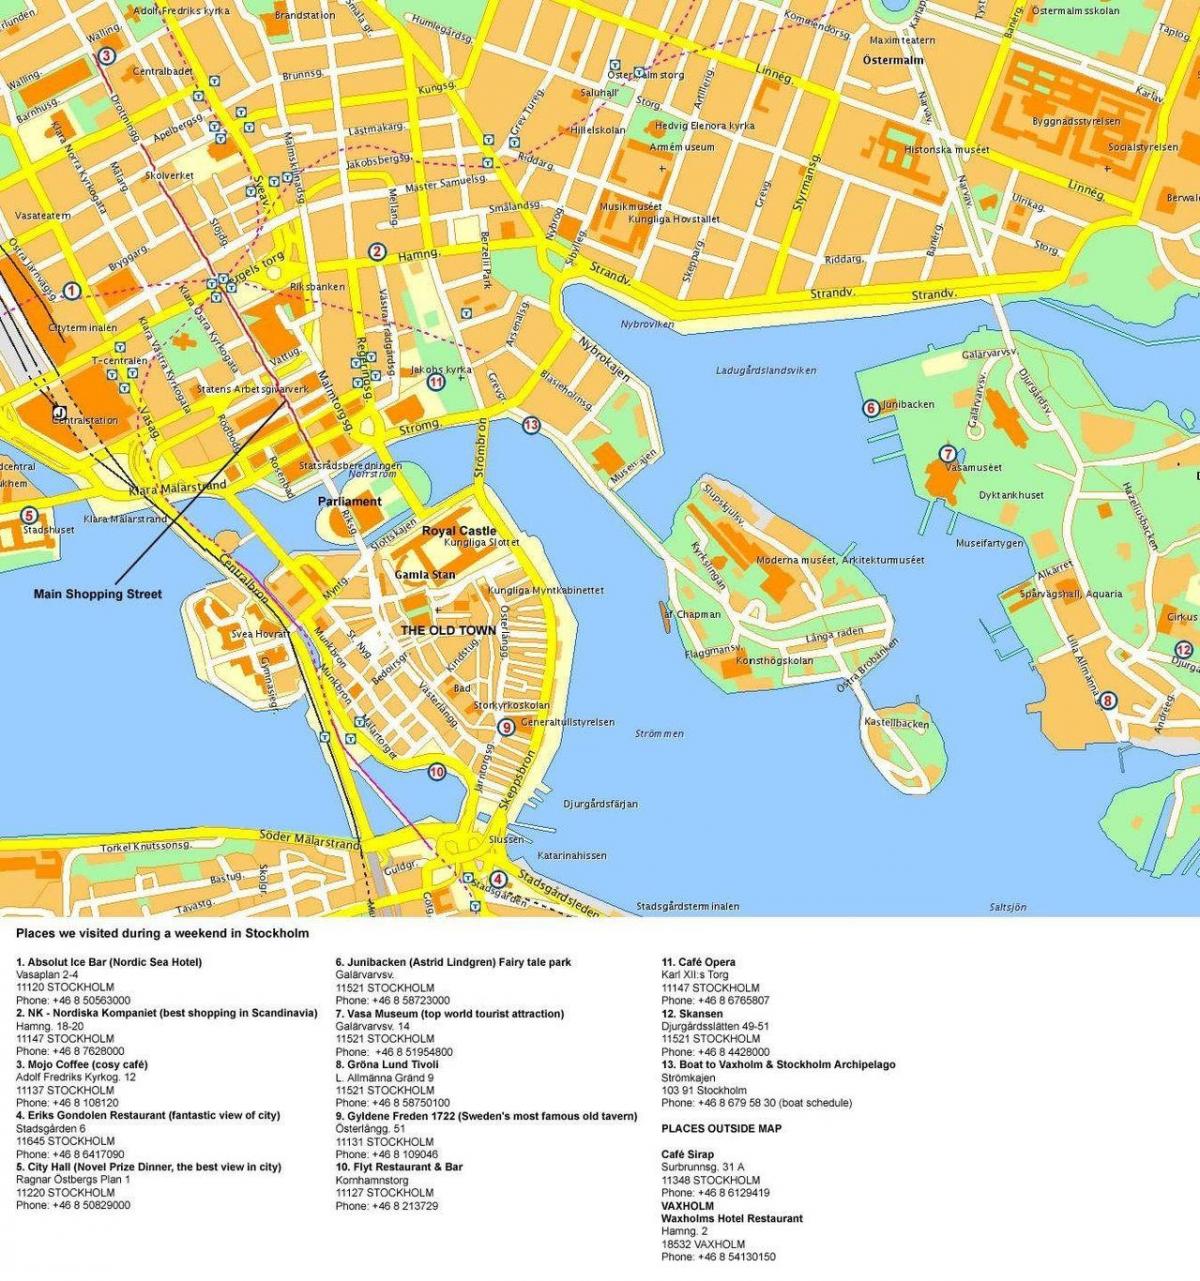 Stockholm cruise terminal haritası 